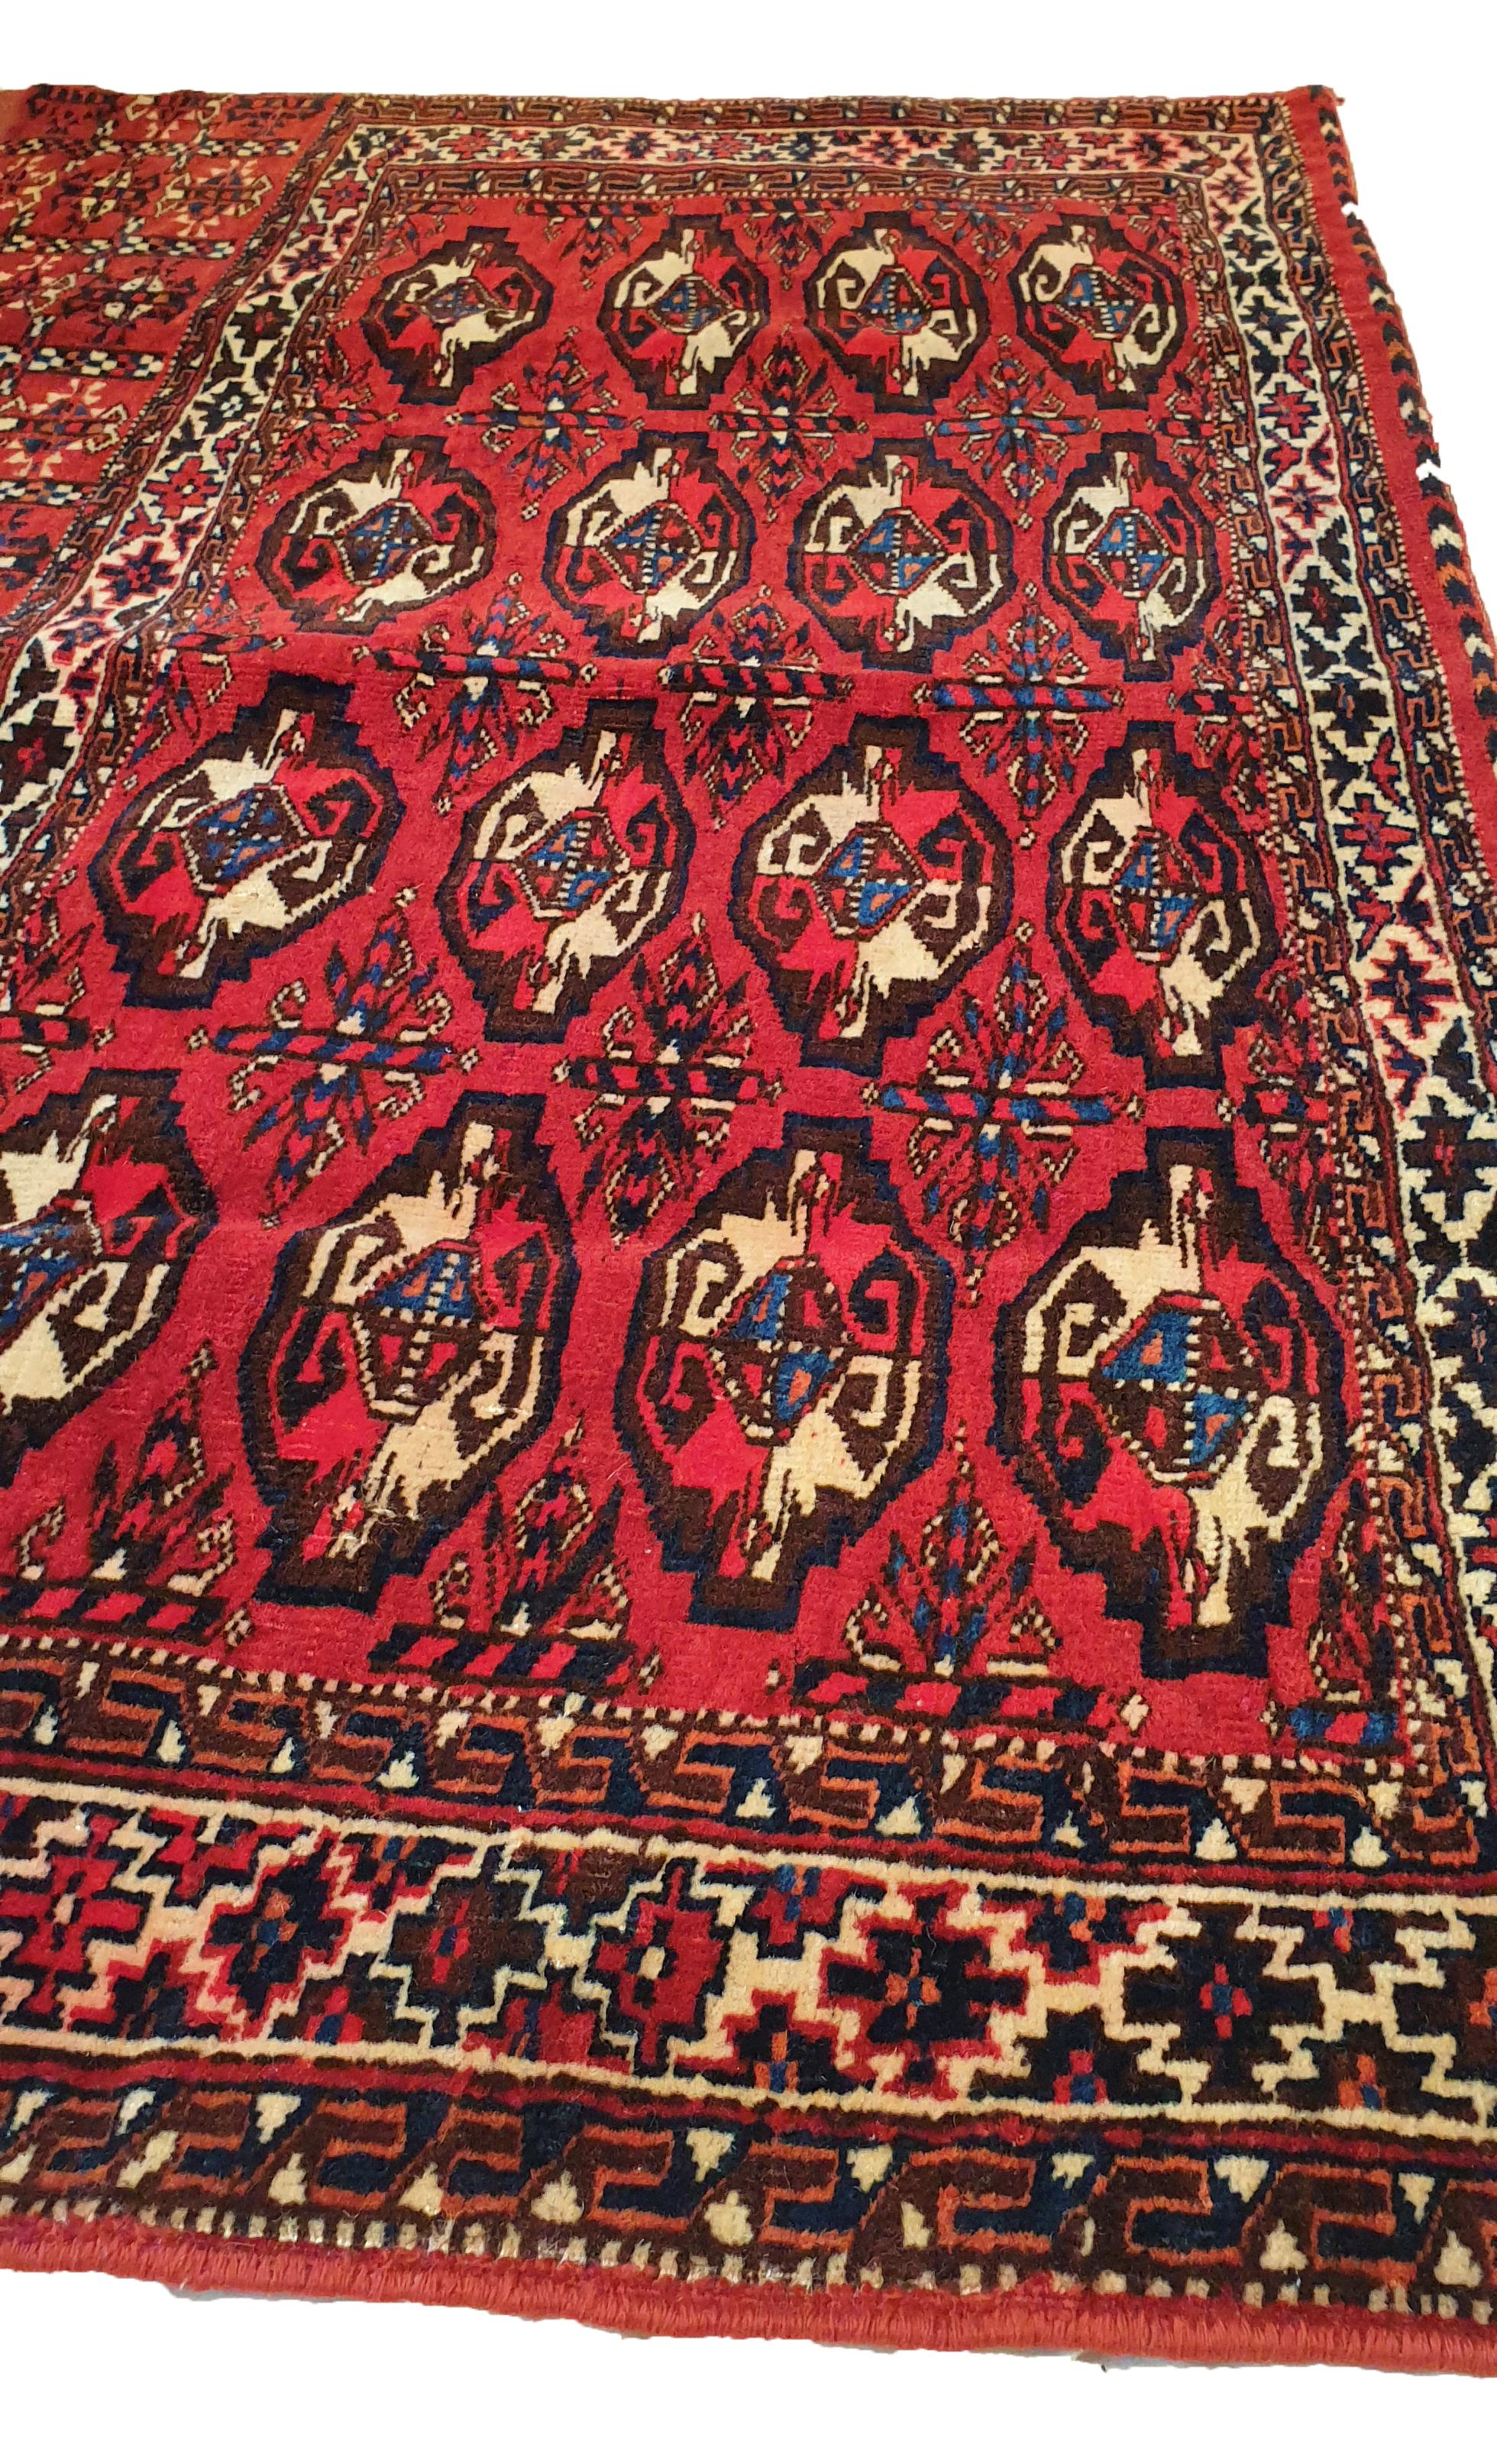 Handgeknüpfter Teppich in einer turkmenischen Fabrik.
Hohe Qualität, schöne Grafiken und bemerkenswerte Finesse.
Dichte: Etwa 12 000 Knoten pro dm².
Perfekter Erhaltungszustand.

Abmessungen: 120 x 75 cm.